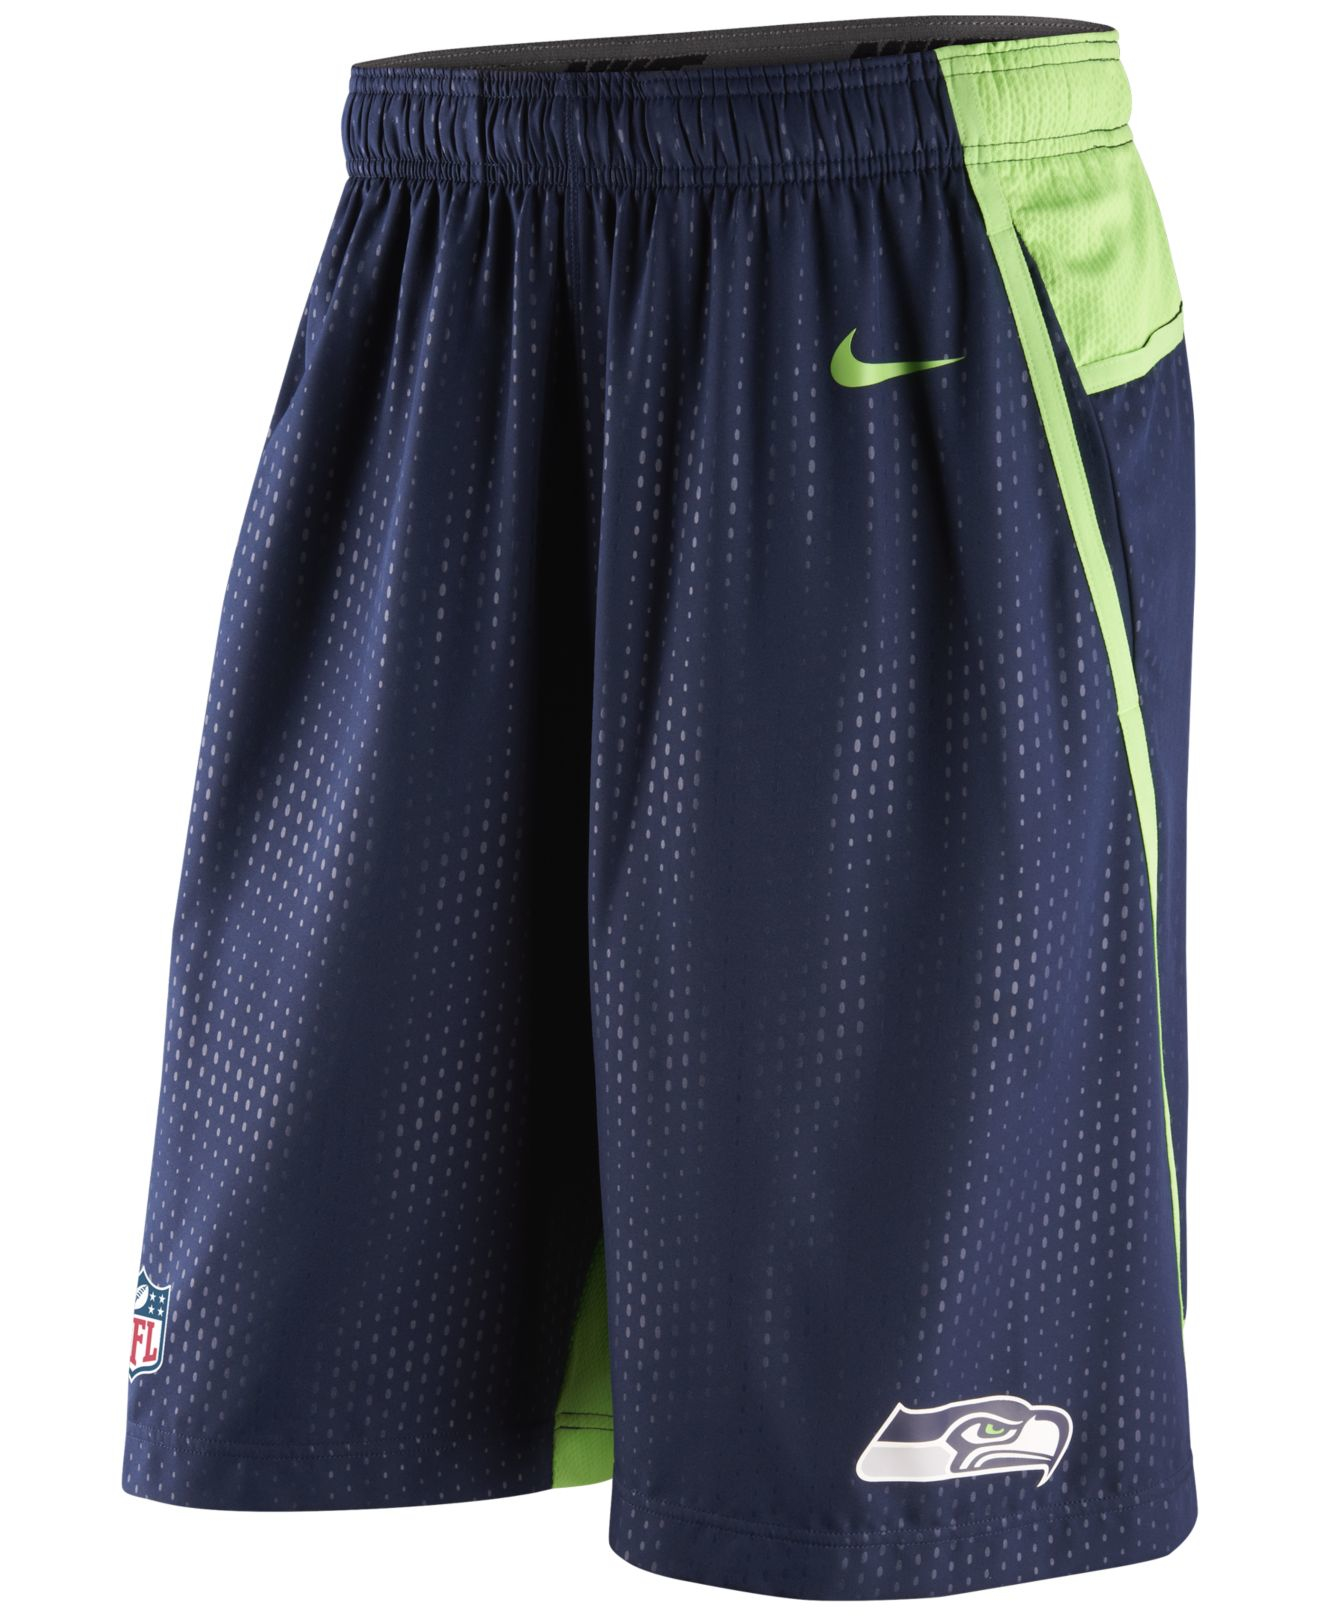 Lyst - Nike Men's Seattle Seahawks Dri-fit Fly Xl 3.0 Shorts in Blue ...